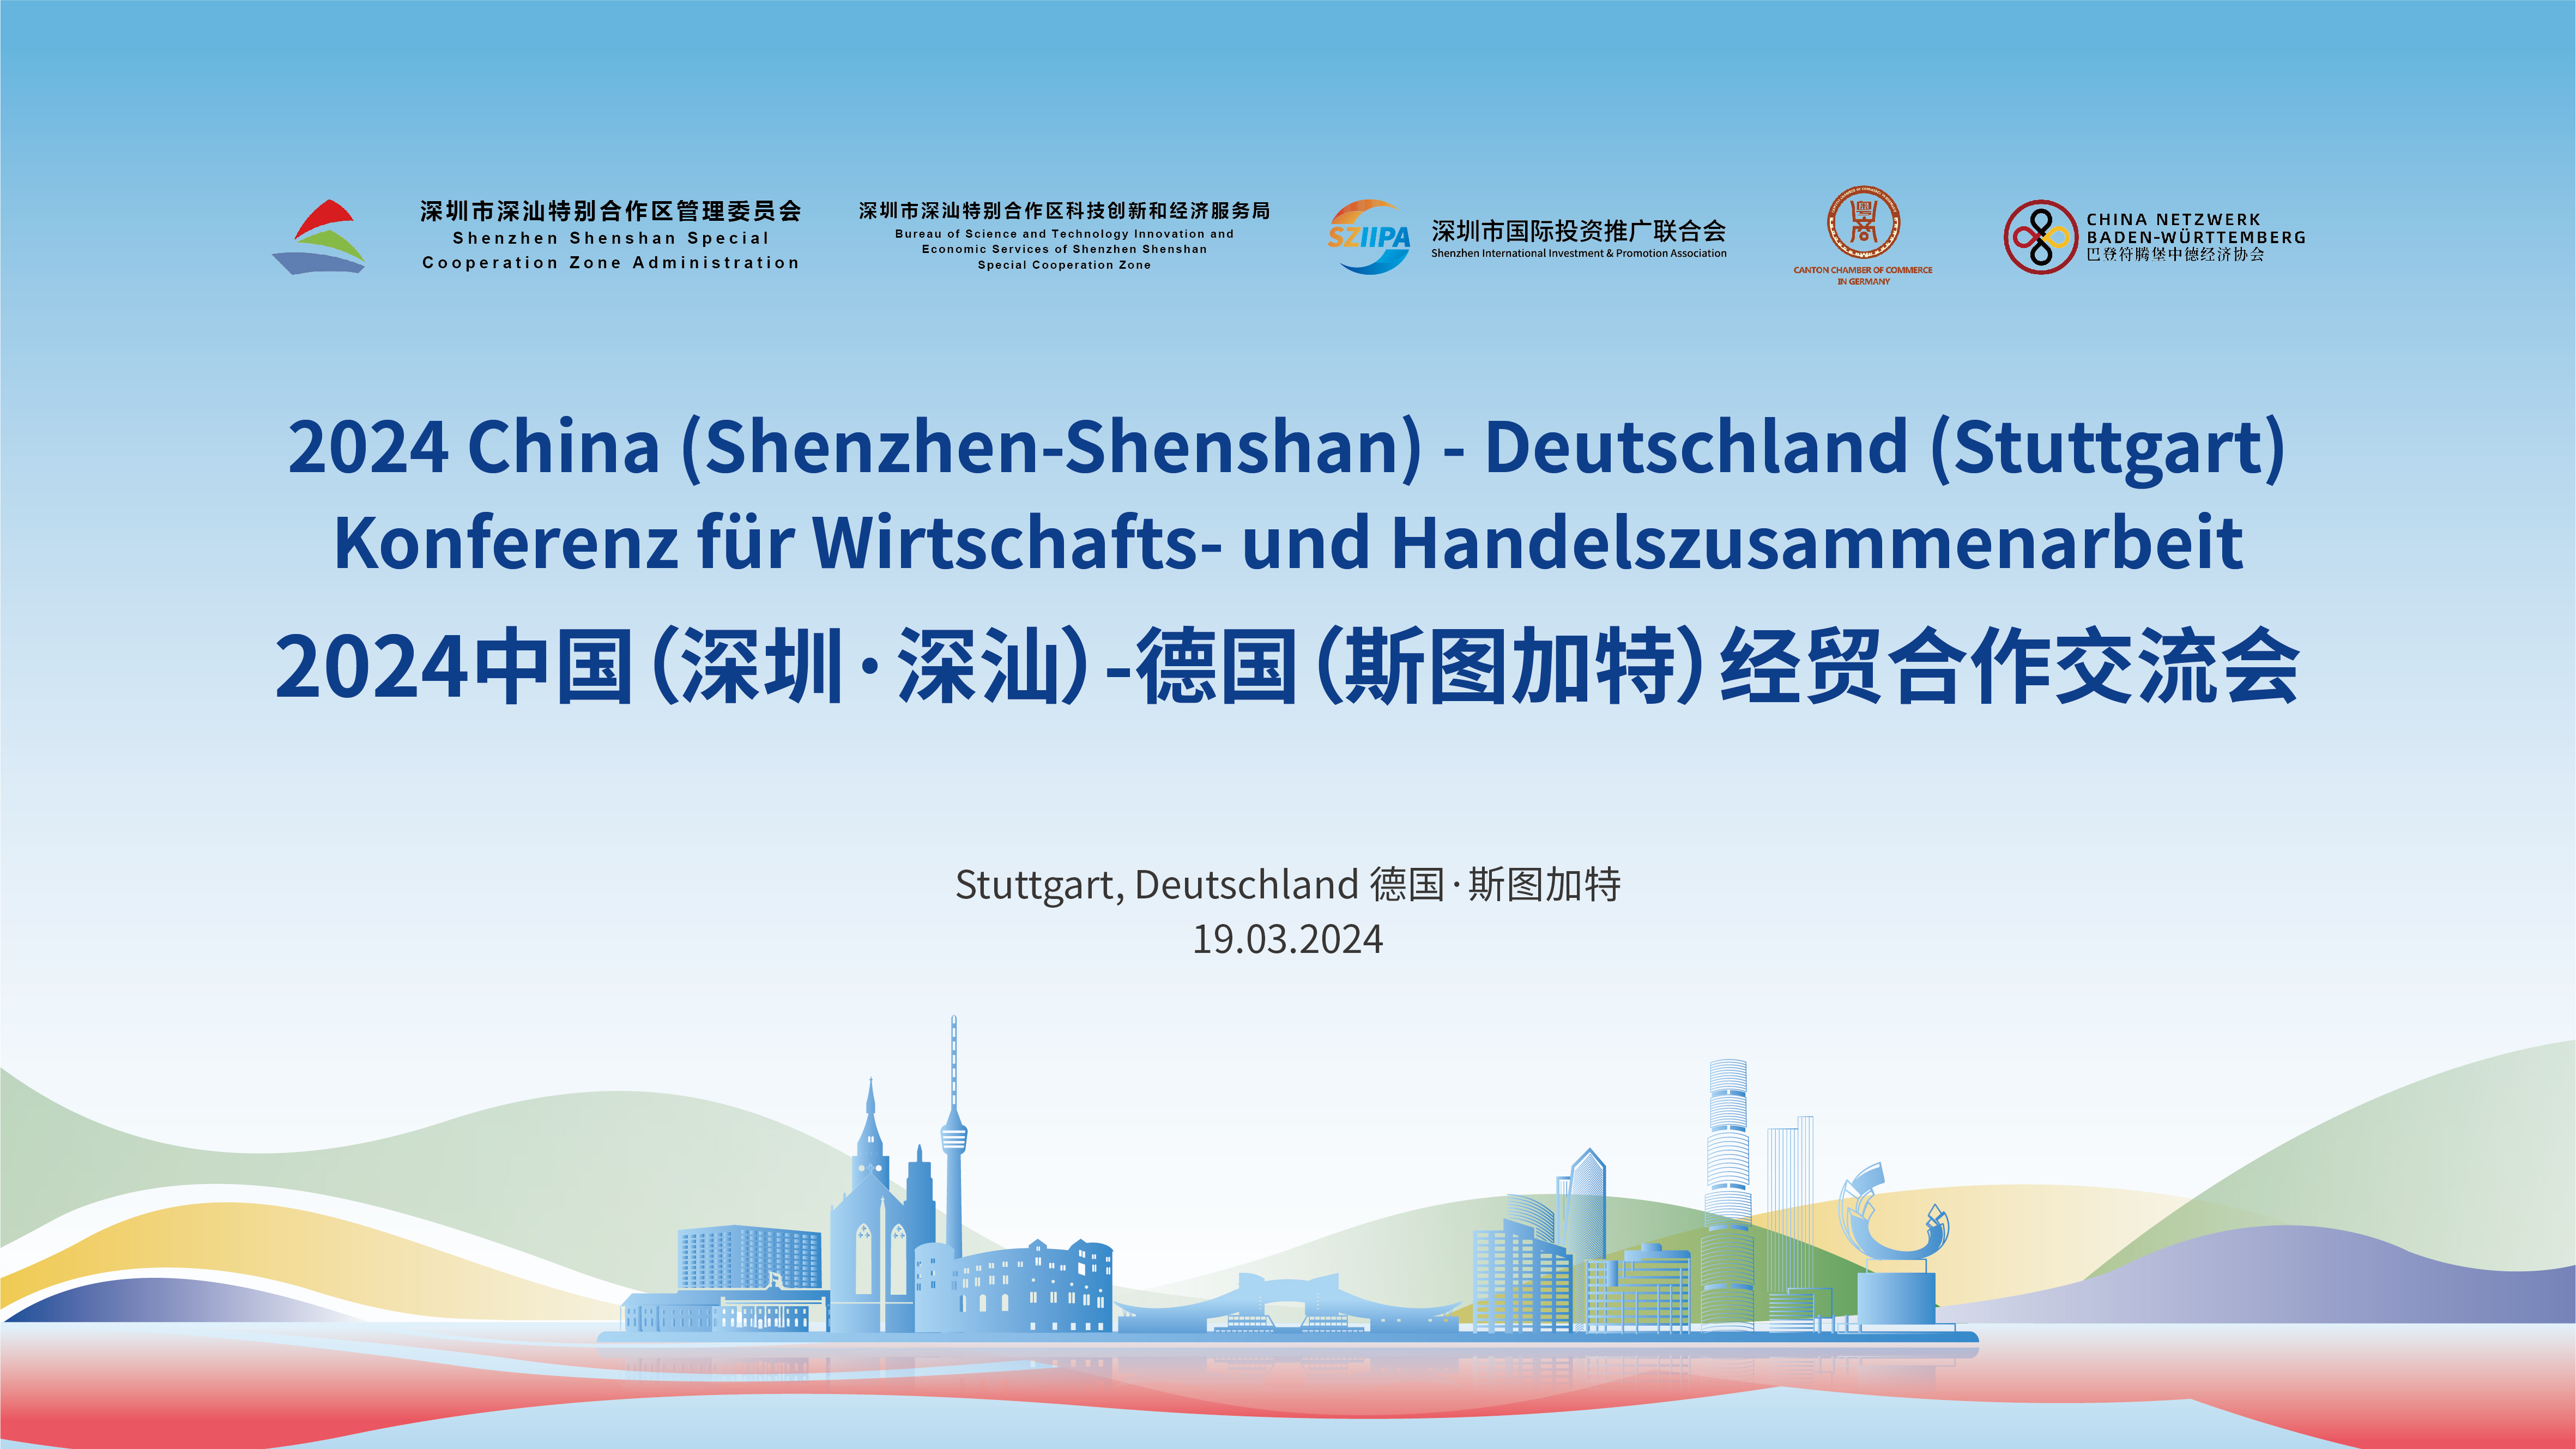 Shenzhen-Shenshan: Konferenz für Wirtschafts- und Handelszusammenarbeit